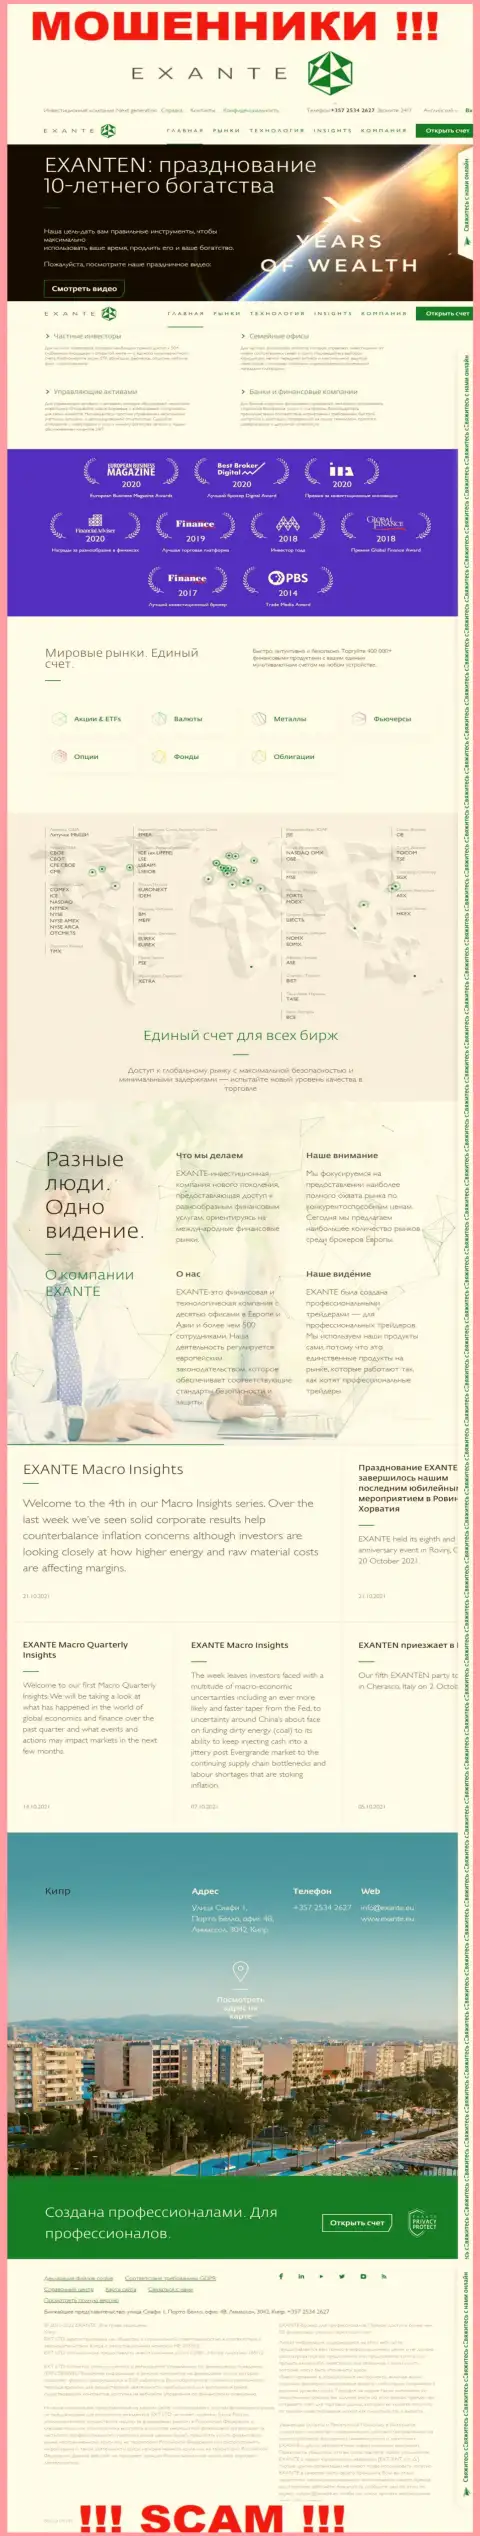 Exante Eu - это сайт конторы EXANTE, типичная страничка мошенников